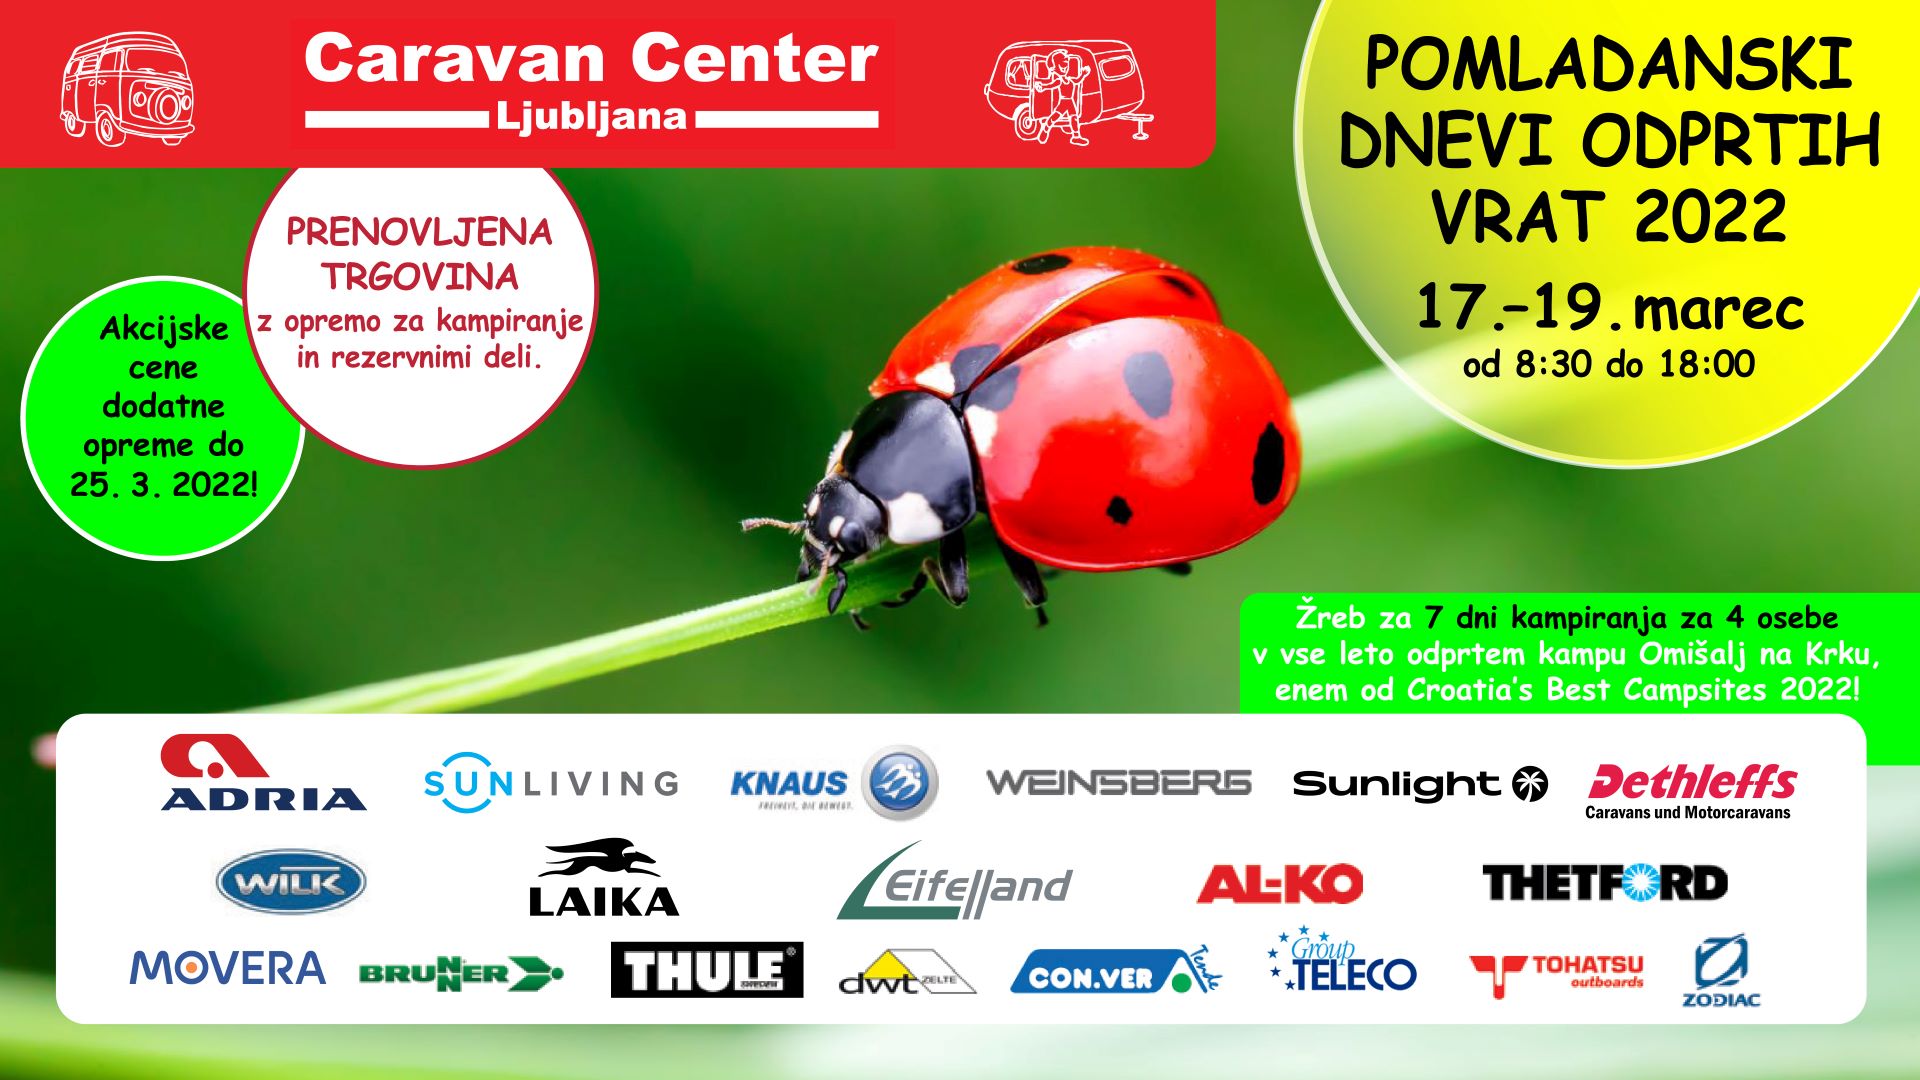 Caravan Center Ljubljana - dnevi odprtih vrat 2022 - Avtokampi.si